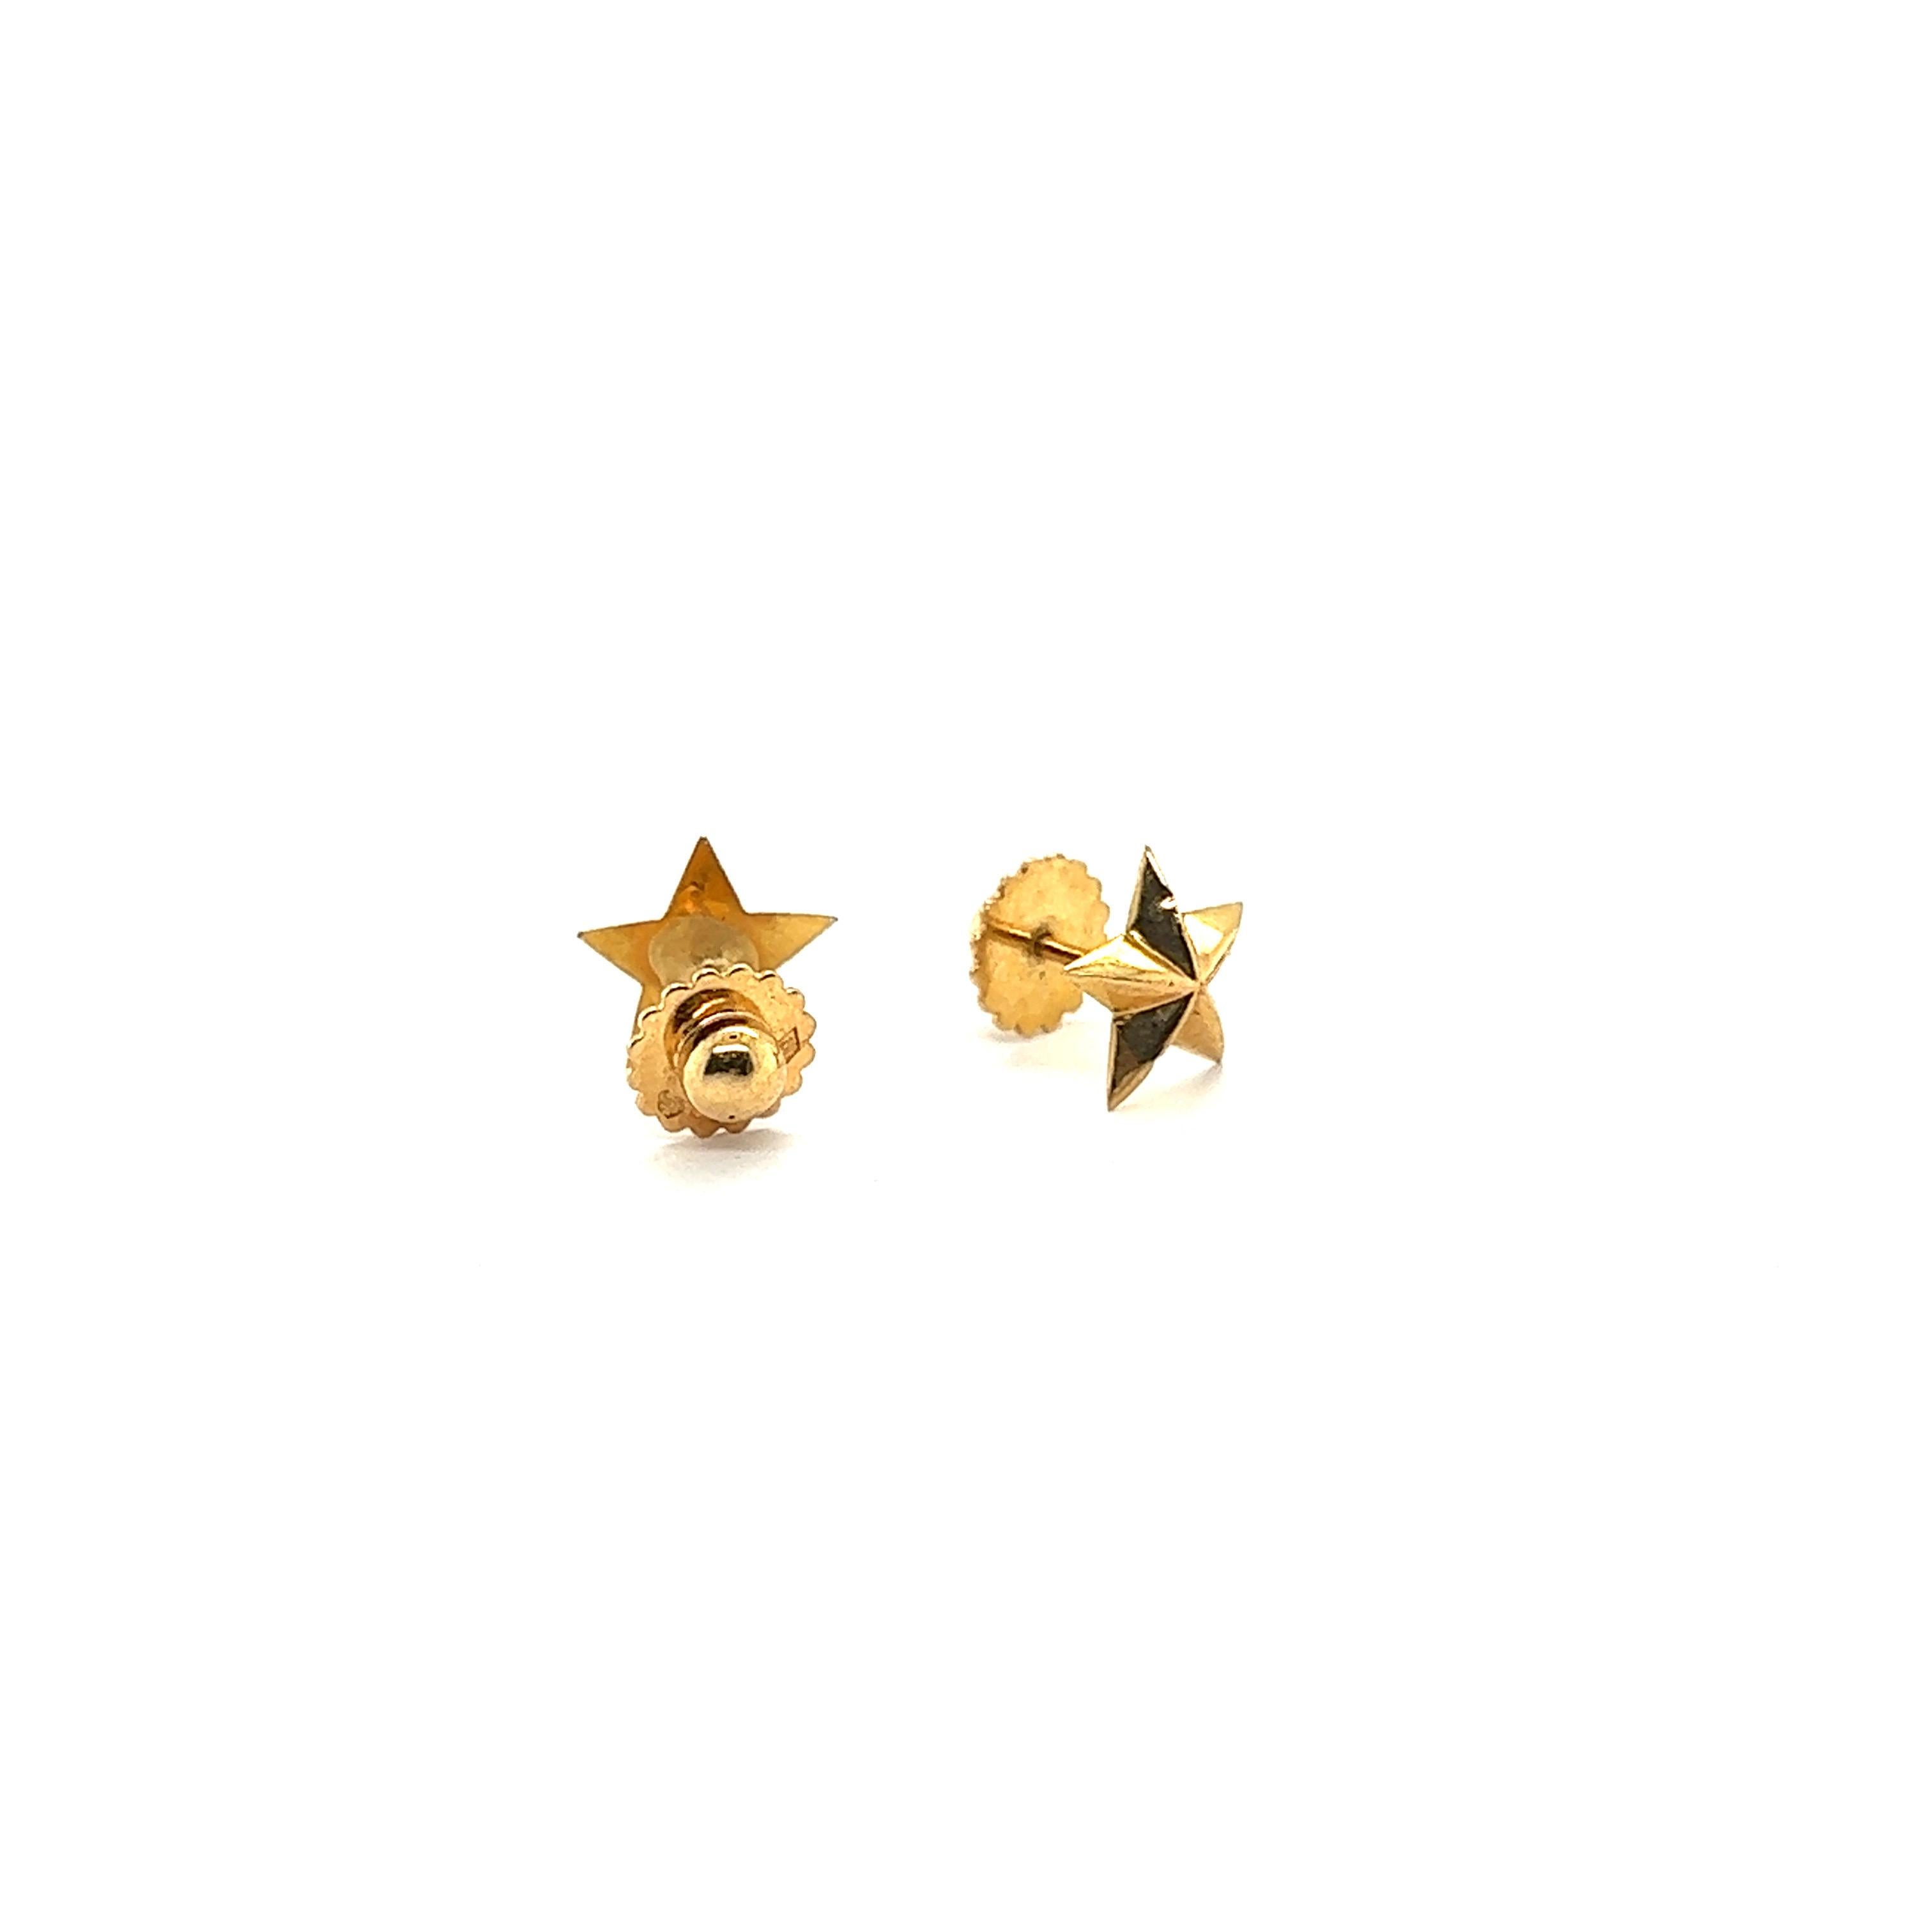 Sternförmige Ohrringe Gelbgold 18 Karat 

Diese wunderschönen, voluminösen Stern-Ohrringe sind ein Muss für Ihre hochwertige Schmucksammlung. Die Ohrringe sind mit Schraubknöpfen versehen, um maximale Sicherheit und einen perfekten Sitz zu